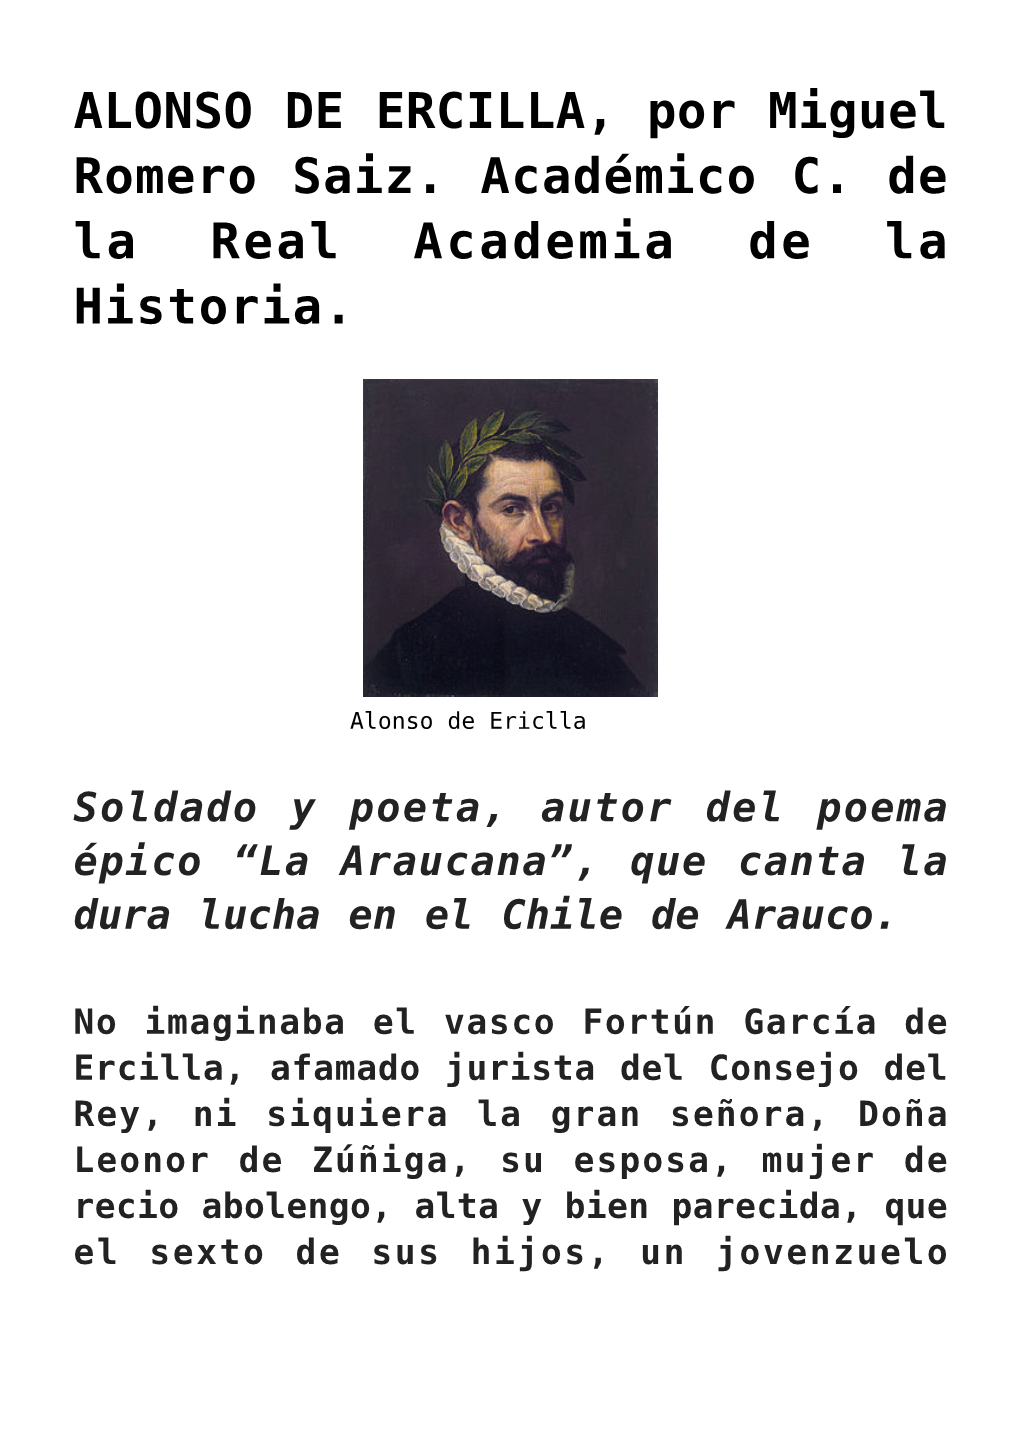 ALONSO DE ERCILLA, Por Miguel Romero Saiz. Académico C. De La Real Academia De La Historia